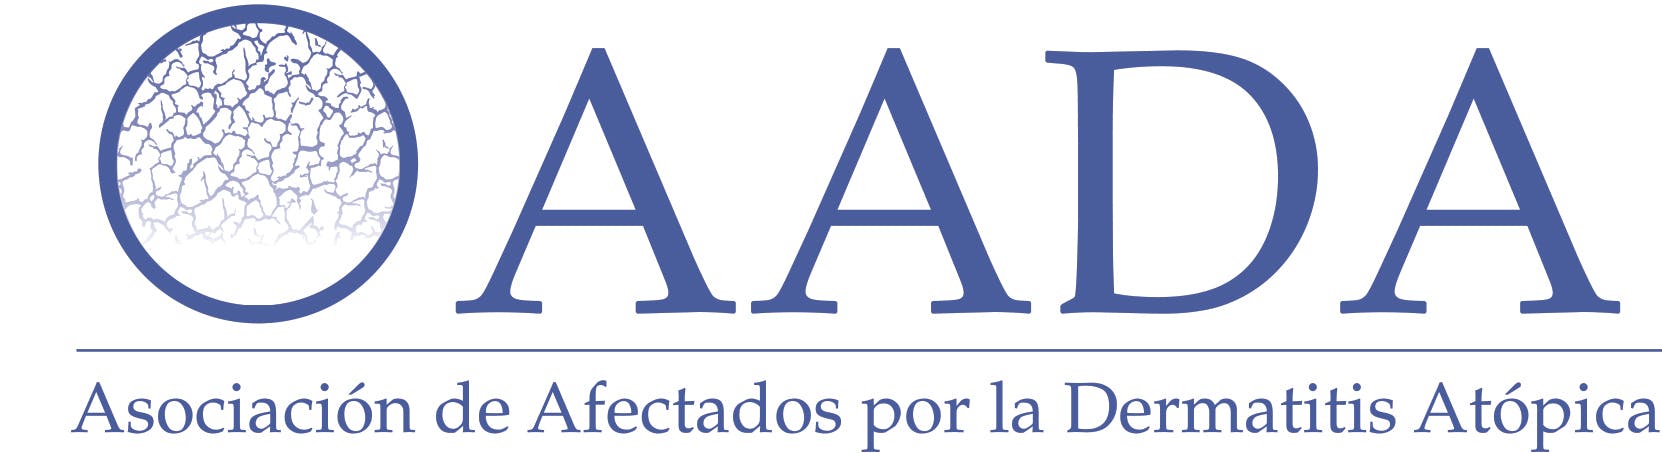 El logo de la Asociación de Afectados por la Dermatitis Atópica